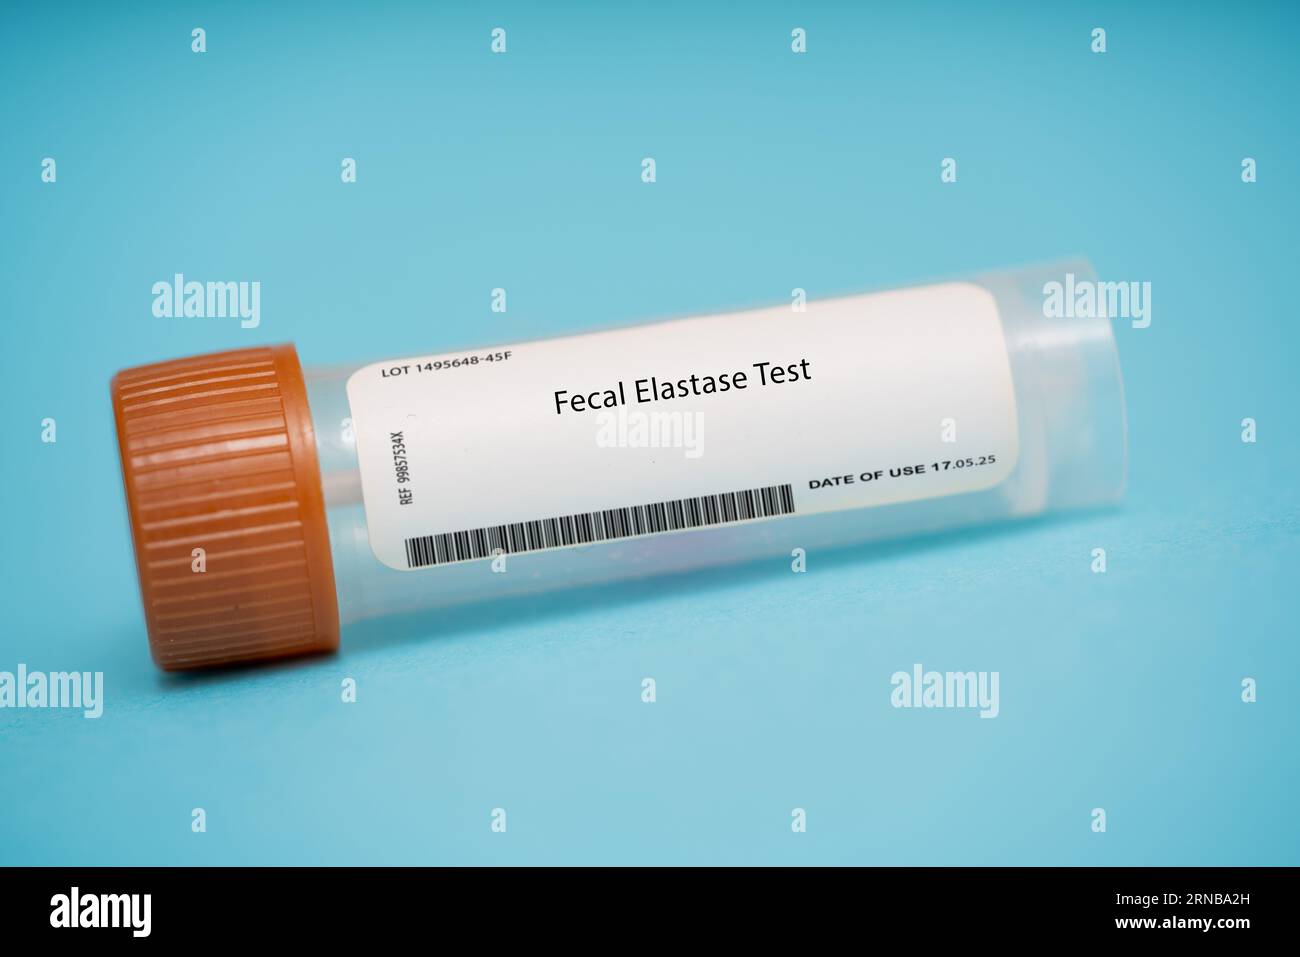 Test de l'élastase fécale ce test mesure le taux d'élastase, une enzyme  produite par le pancréas, dans les selles. Il peut être utilisé pour  diagnostiquer le pancréas Photo Stock - Alamy